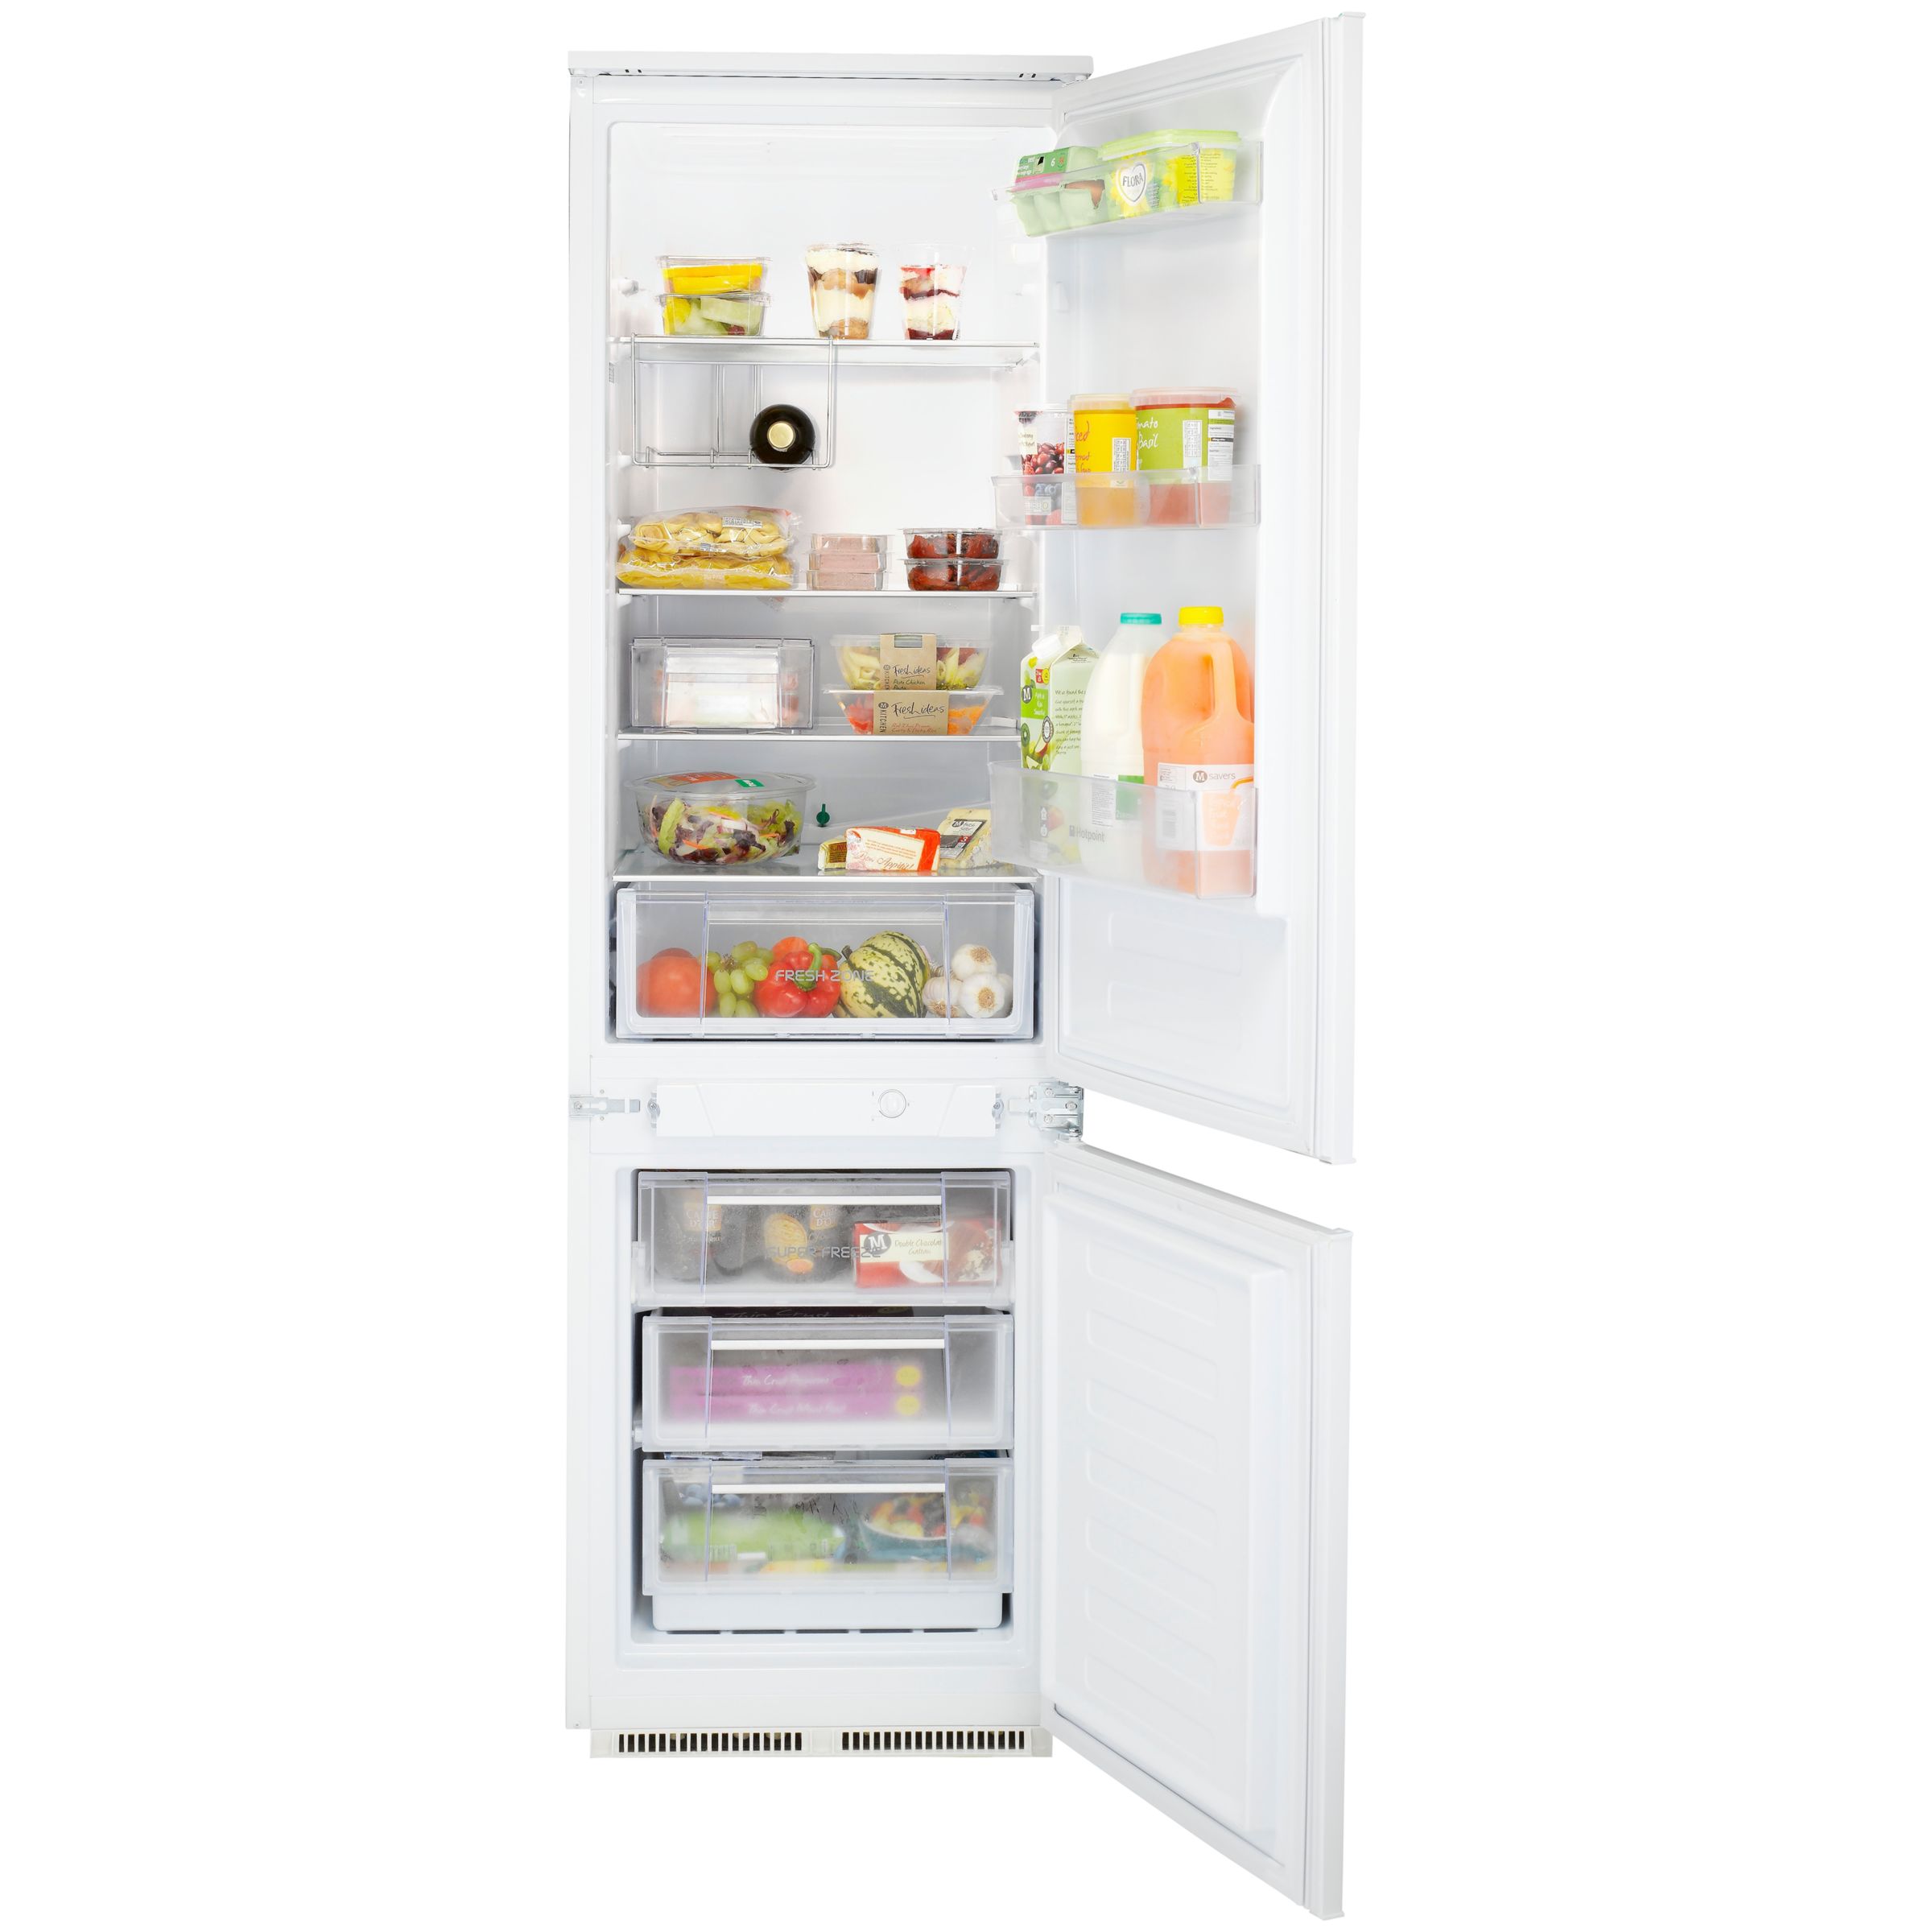 31+ Hotpoint fridge freezer kcm01 ideas